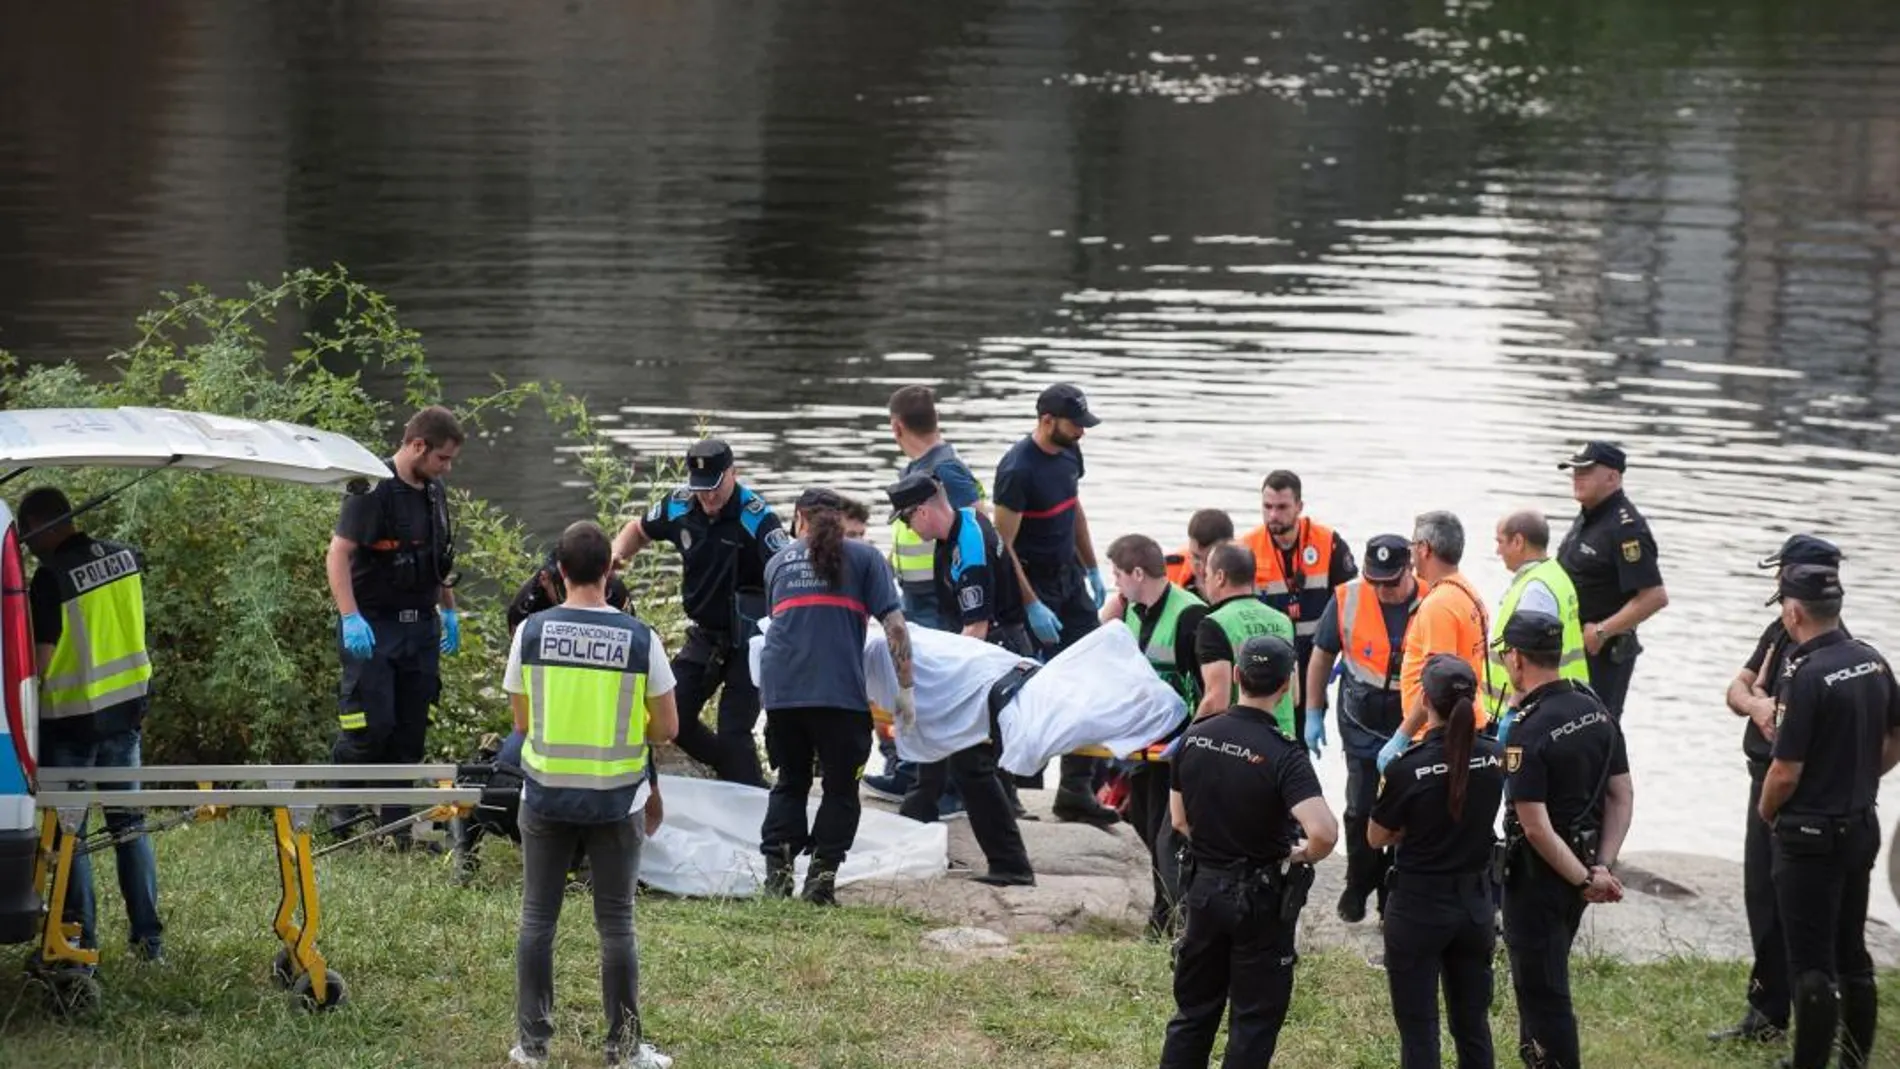 El cuerpo fue hallado por efectivos de Proteccion Civil cuando rastreaban río a bordo de una embarcación / Foto: Efe